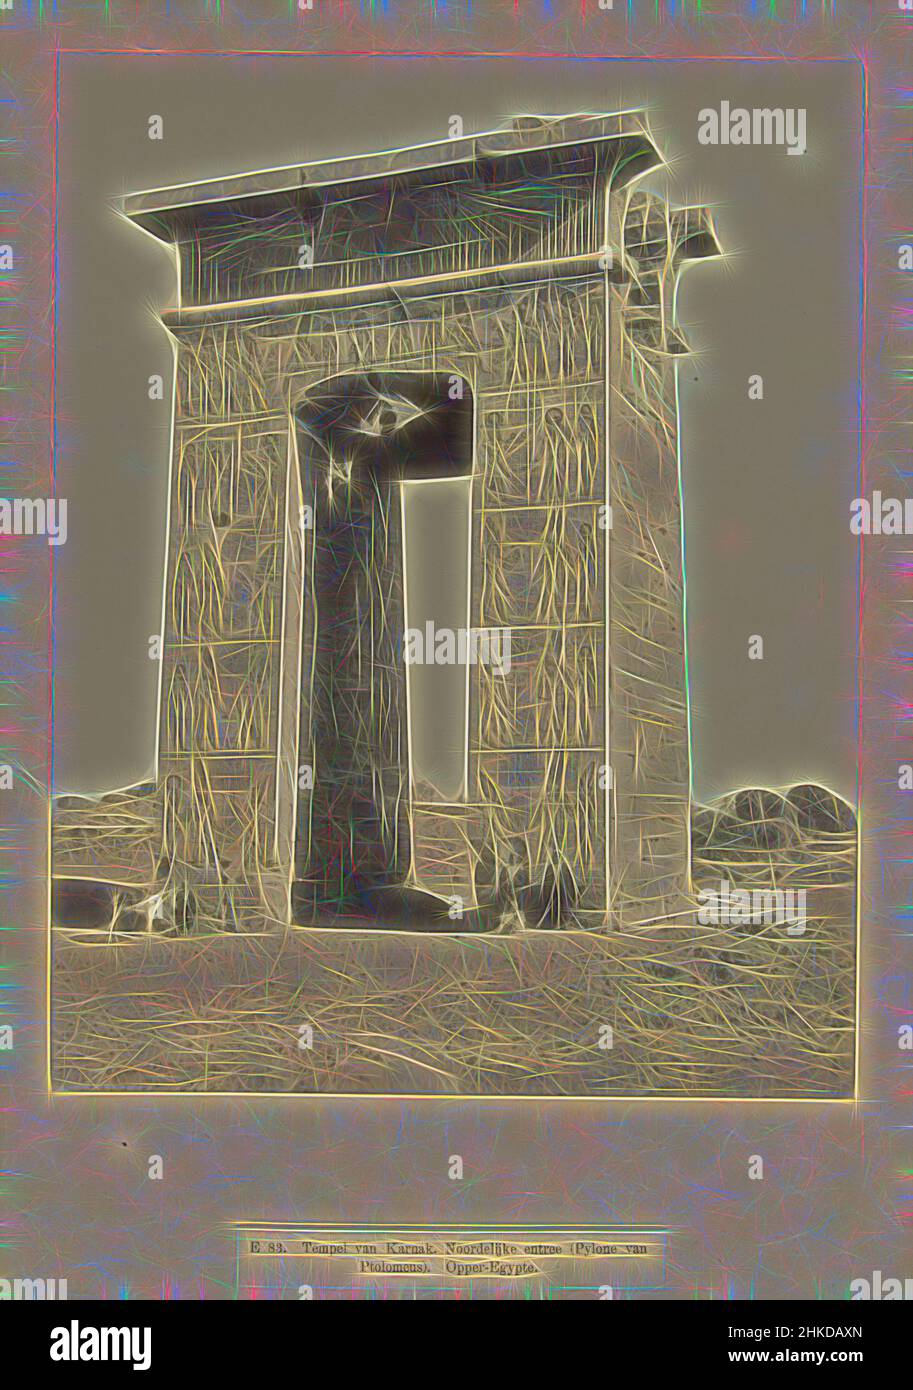 Inspirado por el remanente de la puerta norte del templo de Karnak, E 83. Templo de Karnak. Entrada norte (Pylone de Ptolomeus). Alto Egipto, la puerta norte que conduce al complejo del templo de Karnak. La fotografía es parte de la serie de fotografías de Egipto recogidas por Richard Polak., Egypte, c, Reimaginado por Artótop. Arte clásico reinventado con un toque moderno. Diseño de brillo cálido y alegre y luminosidad e radiación de rayos de luz. Fotografía inspirada en el surrealismo y el futurismo, que abarca la energía dinámica de la tecnología moderna, el movimiento, la velocidad y la revolución de la cultura Foto de stock